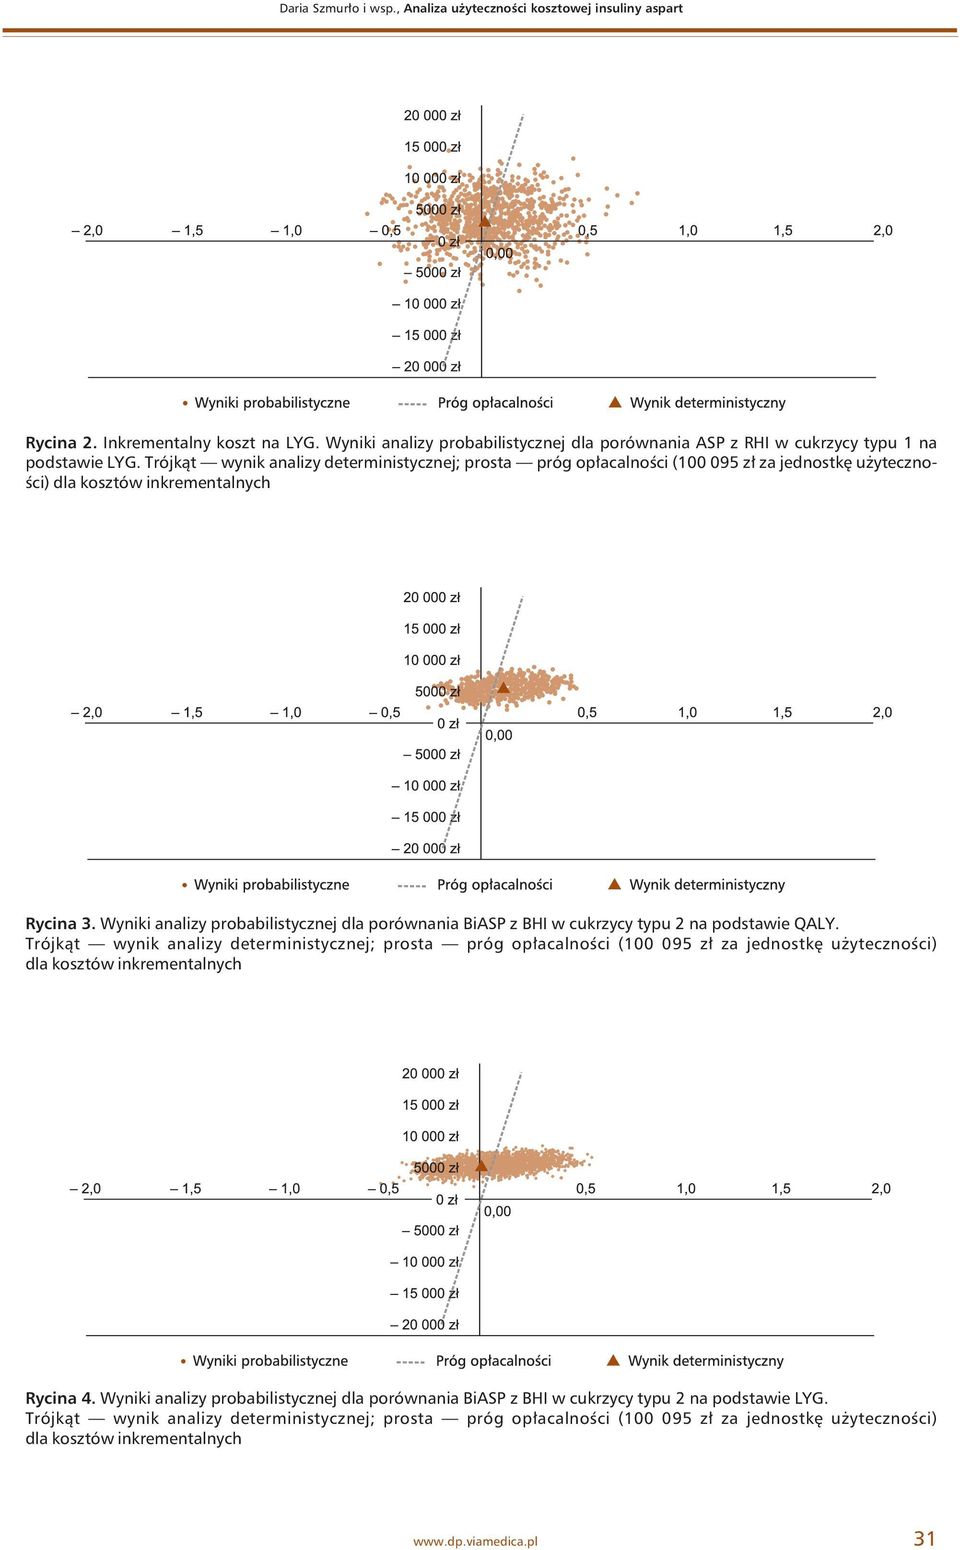 Wyniki analizy probabilistycznej dla porównania BiASP z BHI w cukrzycy typu 2 na podstawie QALY.